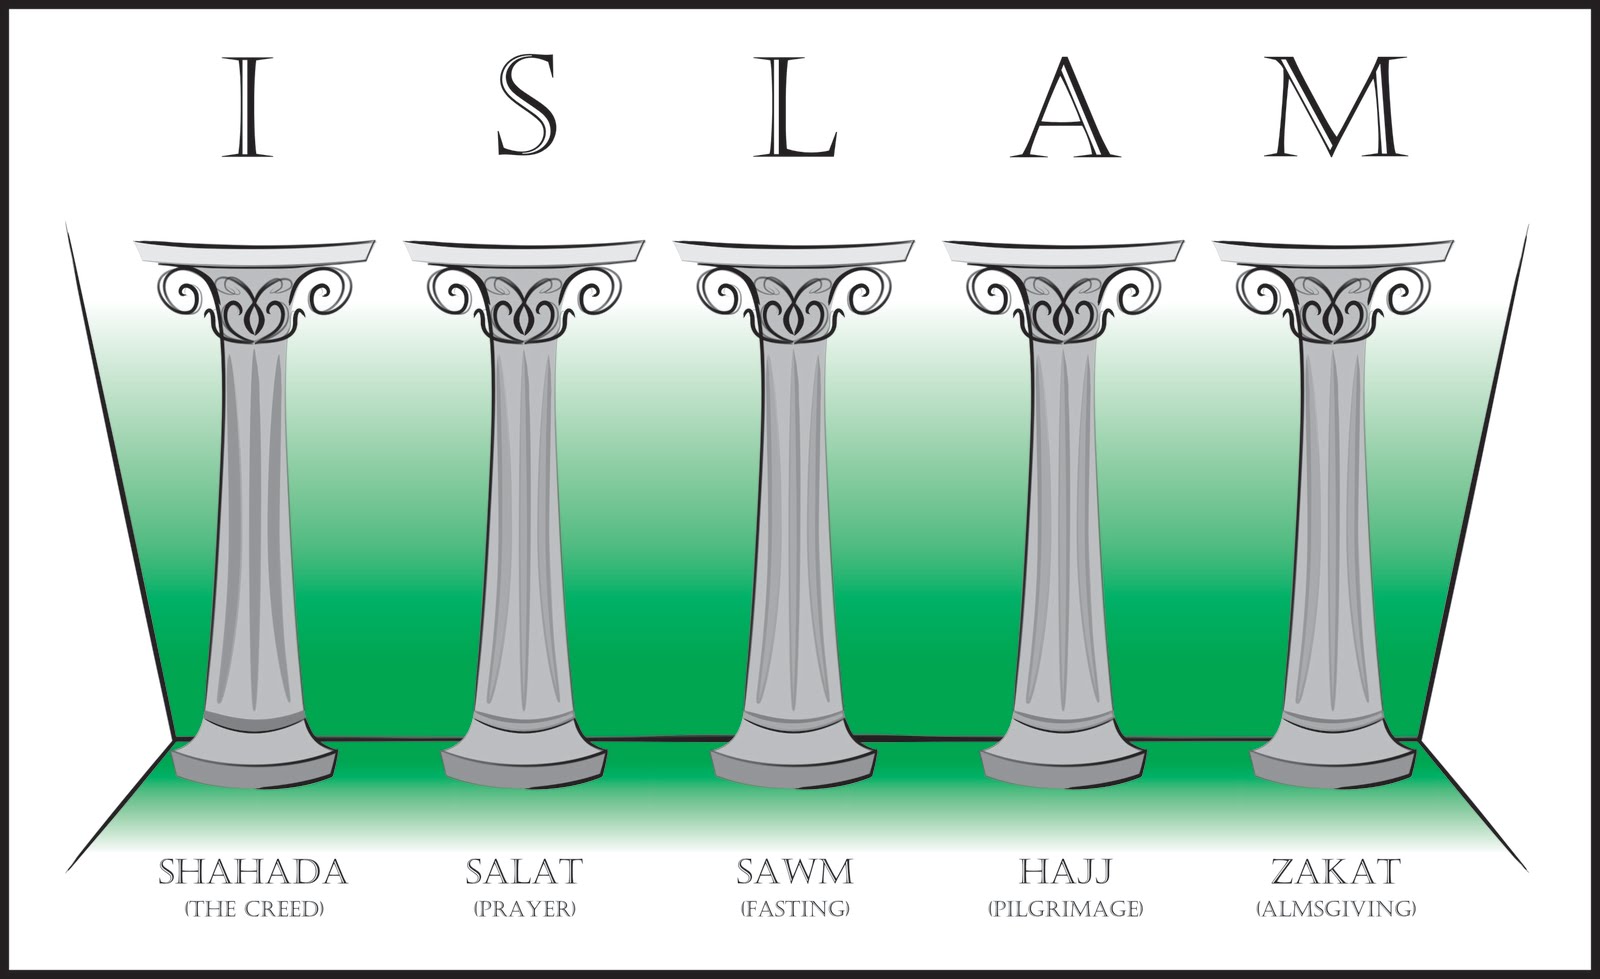 The 5 Pillars of Islam 